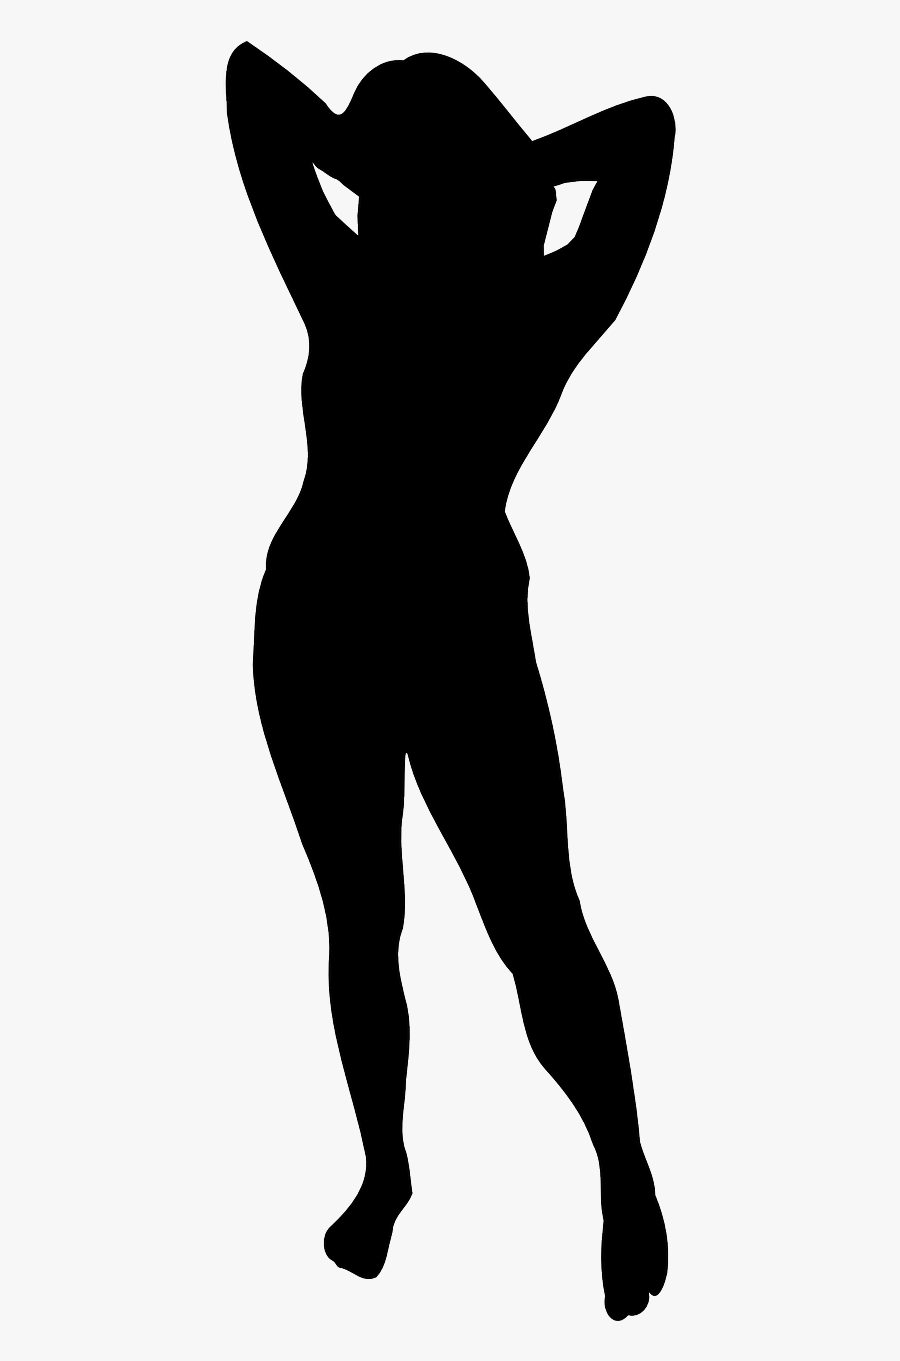 Transparent Black Woman Silhouette Png - Silhouettes Woman Public Domain, Transparent Clipart